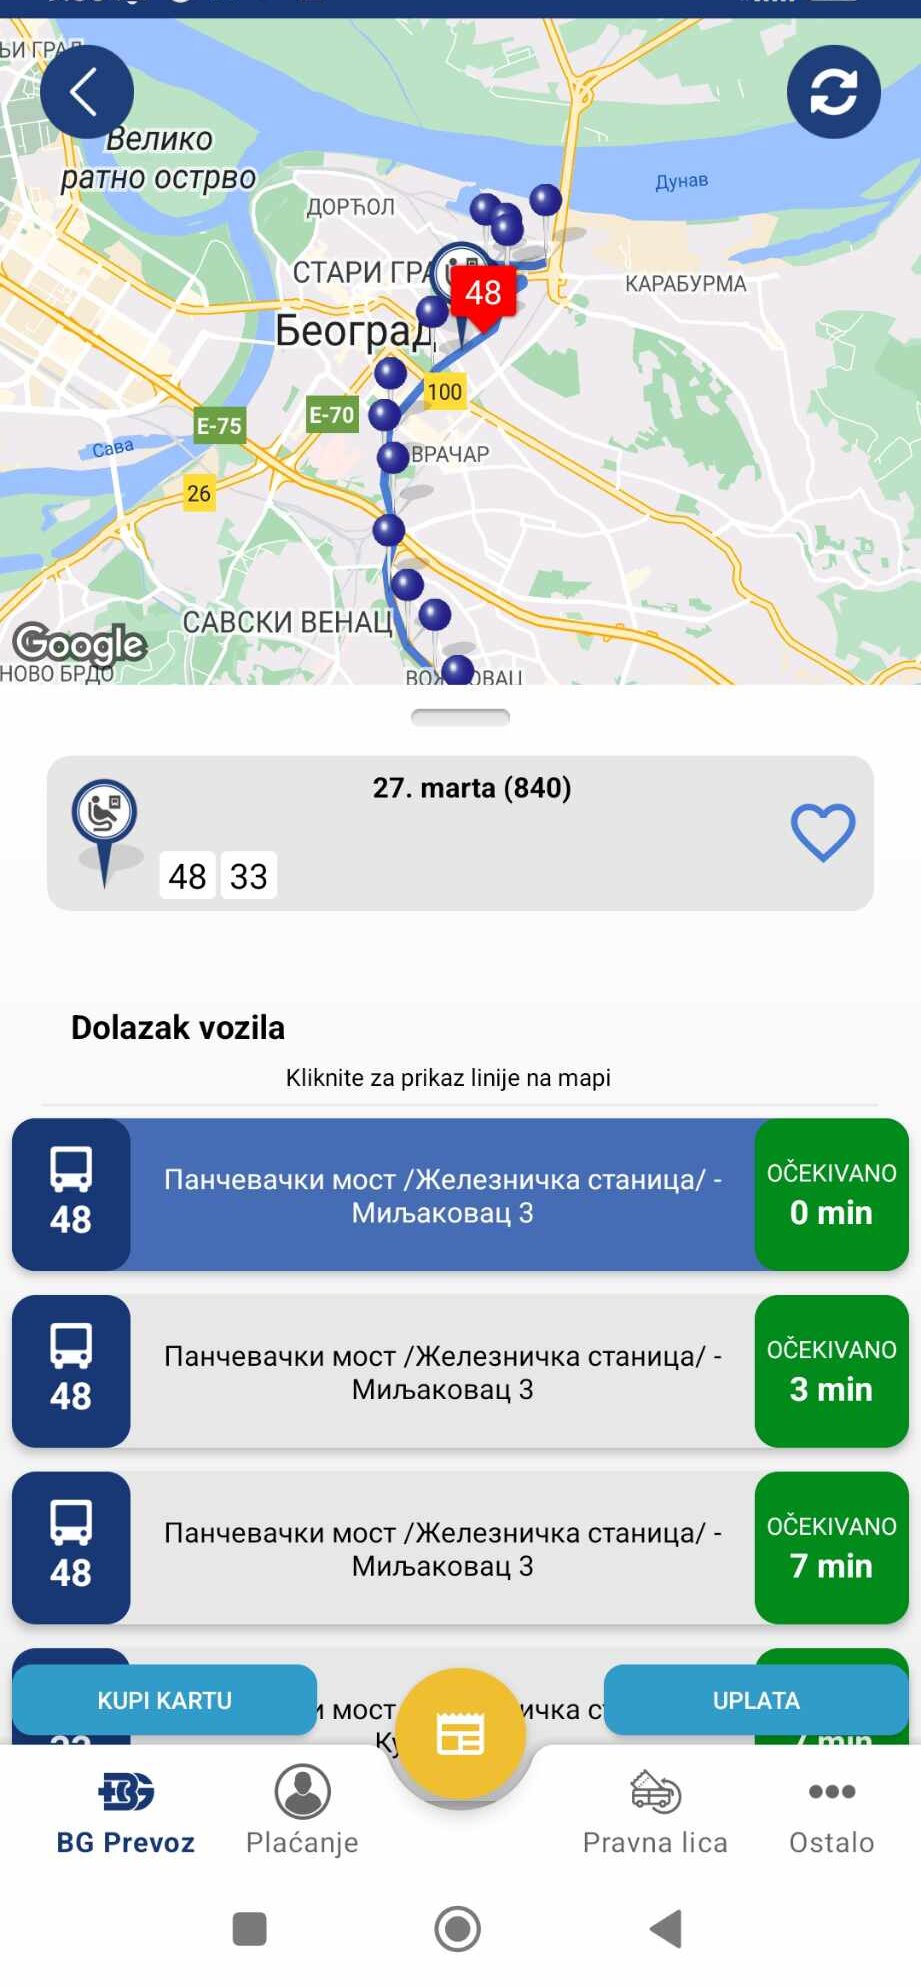 Kako se koristi aplikacija "Beograd plus" i koje sve opcije nudi? 2